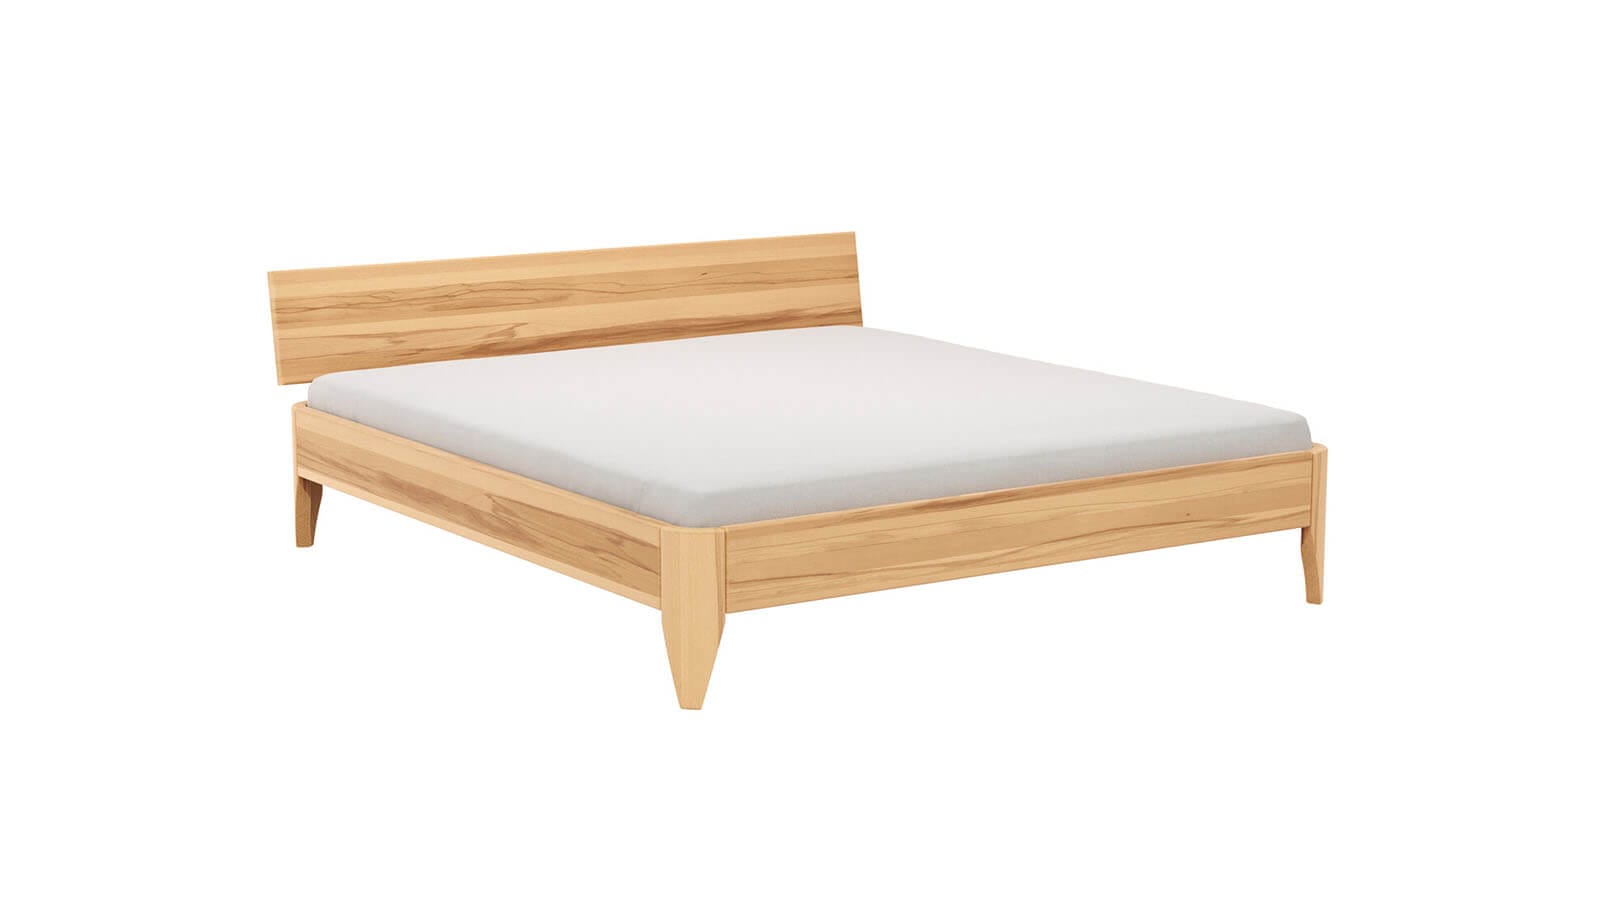 Bettwaren für Hotels, Hersteller hochwertiger Matratzen für das  Hotelgewerbe - Bettfüße Round